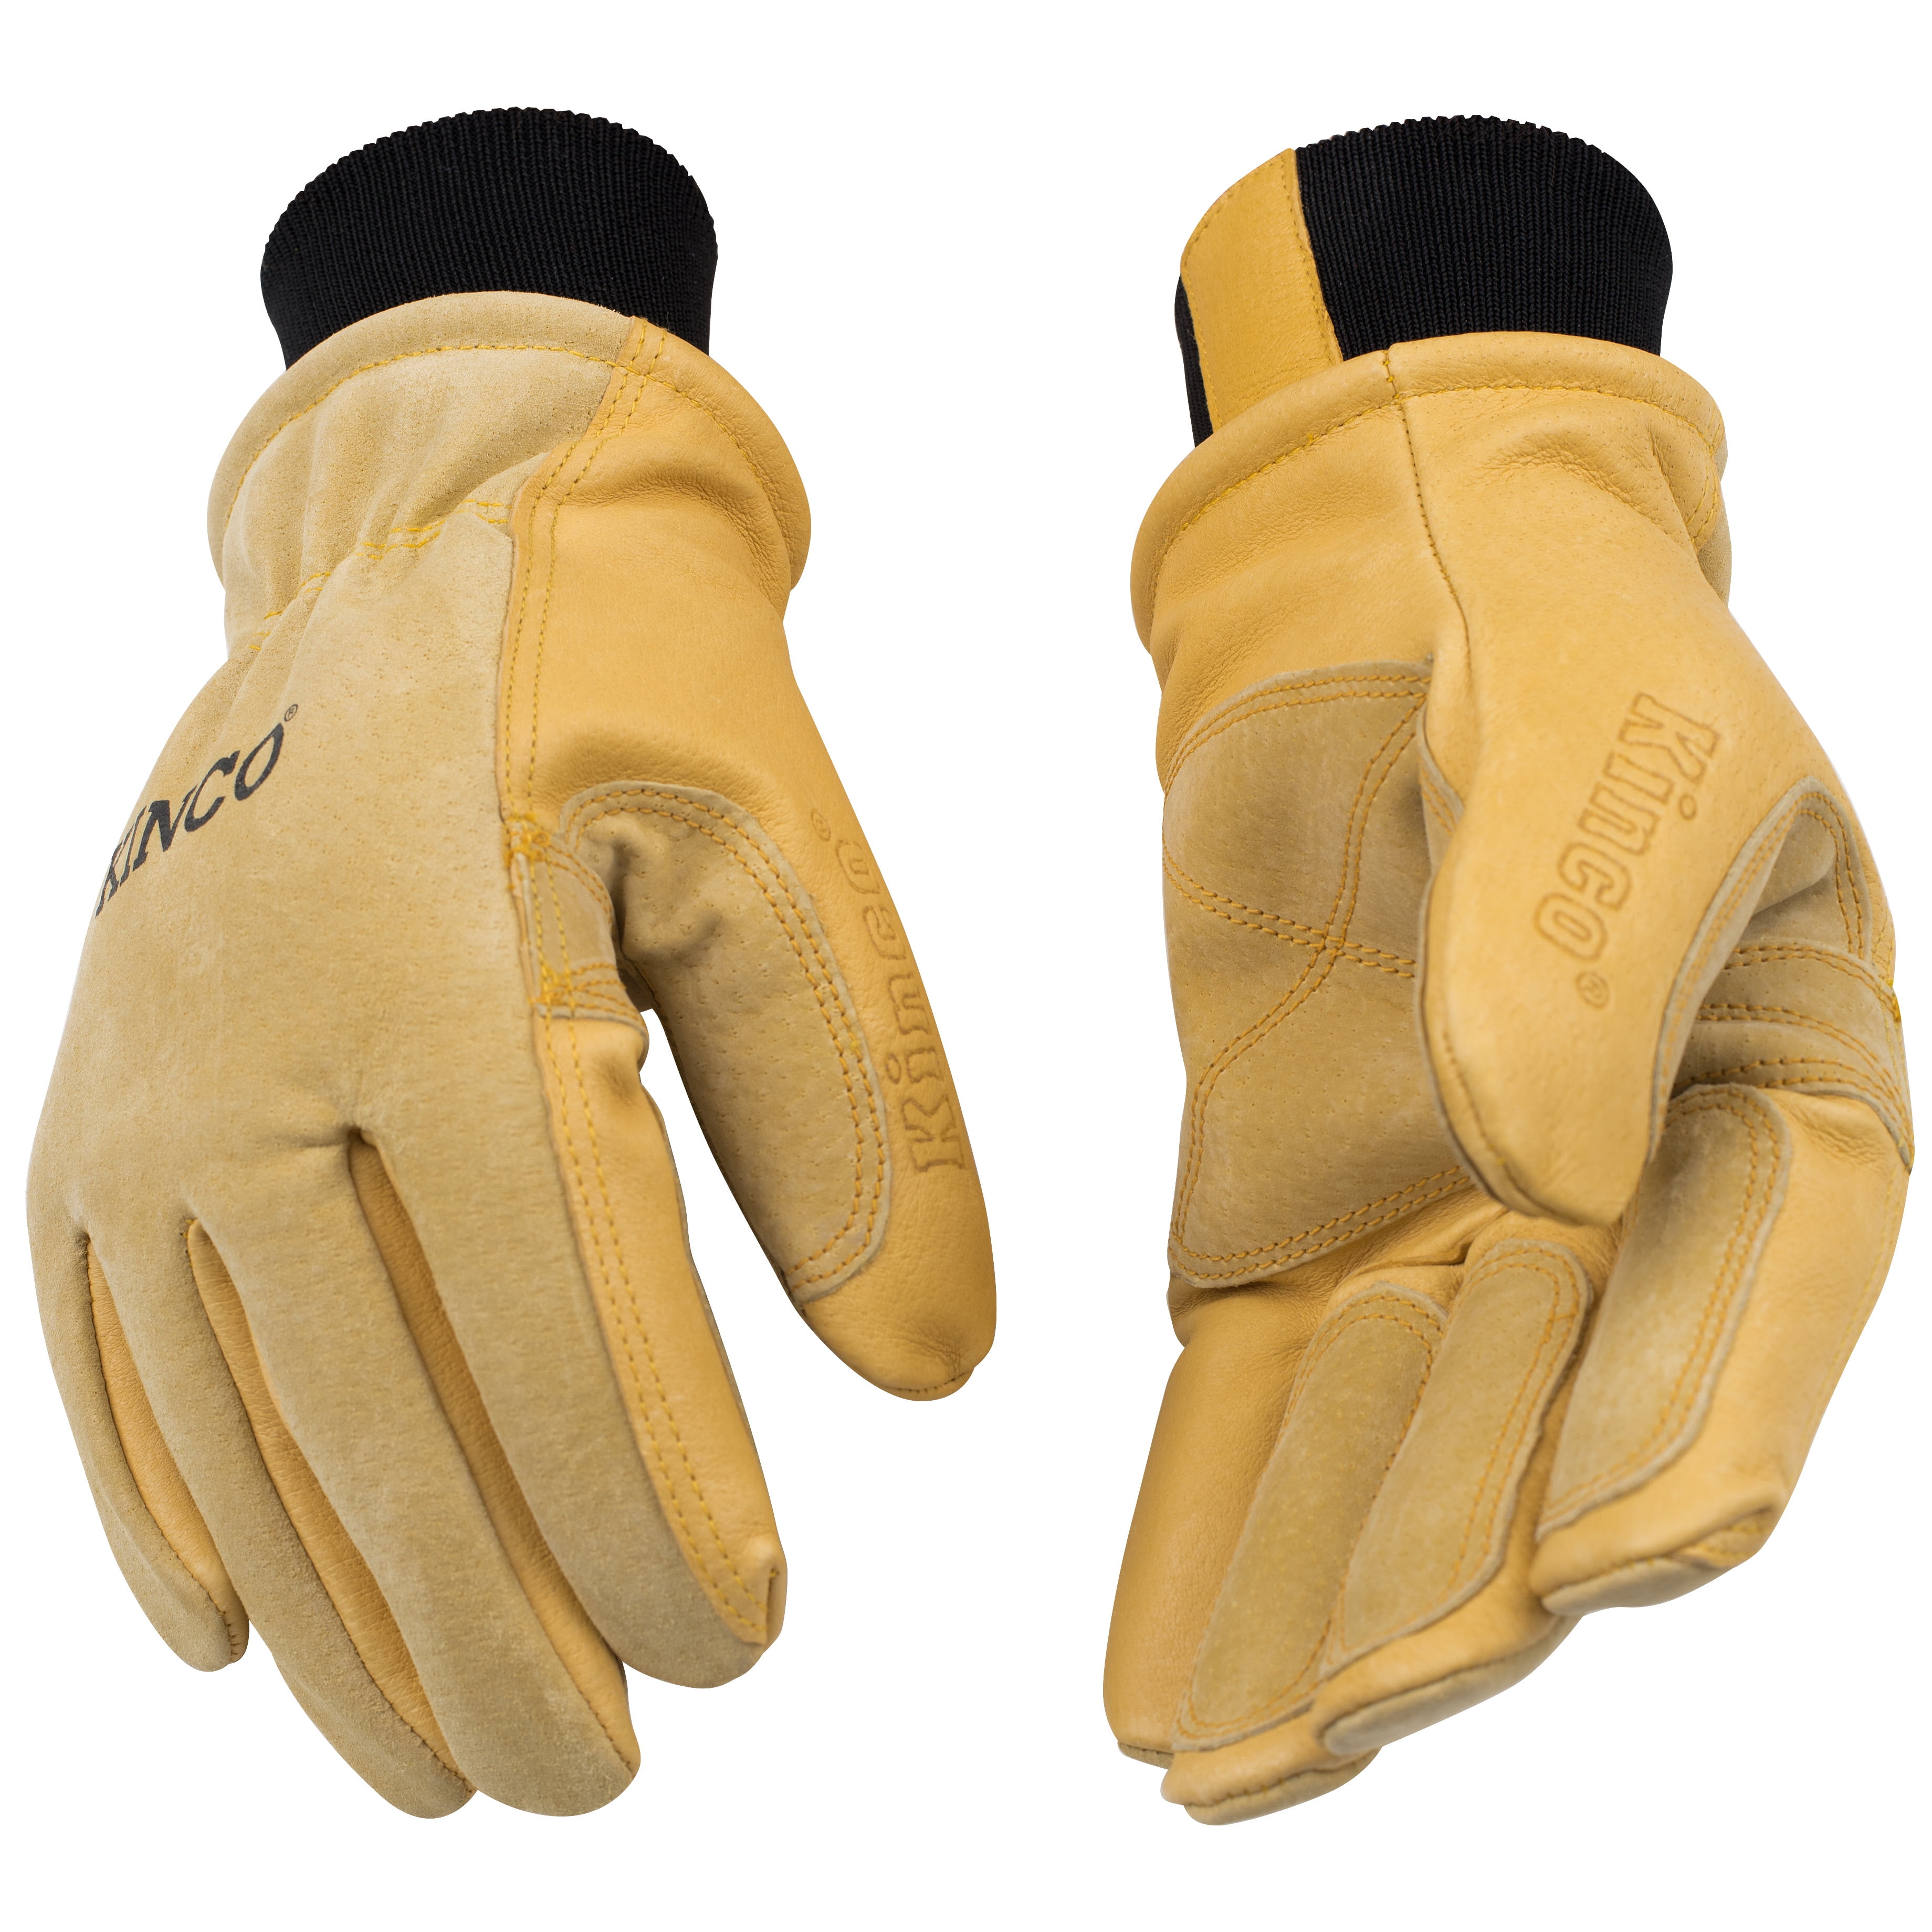 2014 NWOT CELTEK WOLVERINE FACEMASK $30 fastener orange black mittens gloves 